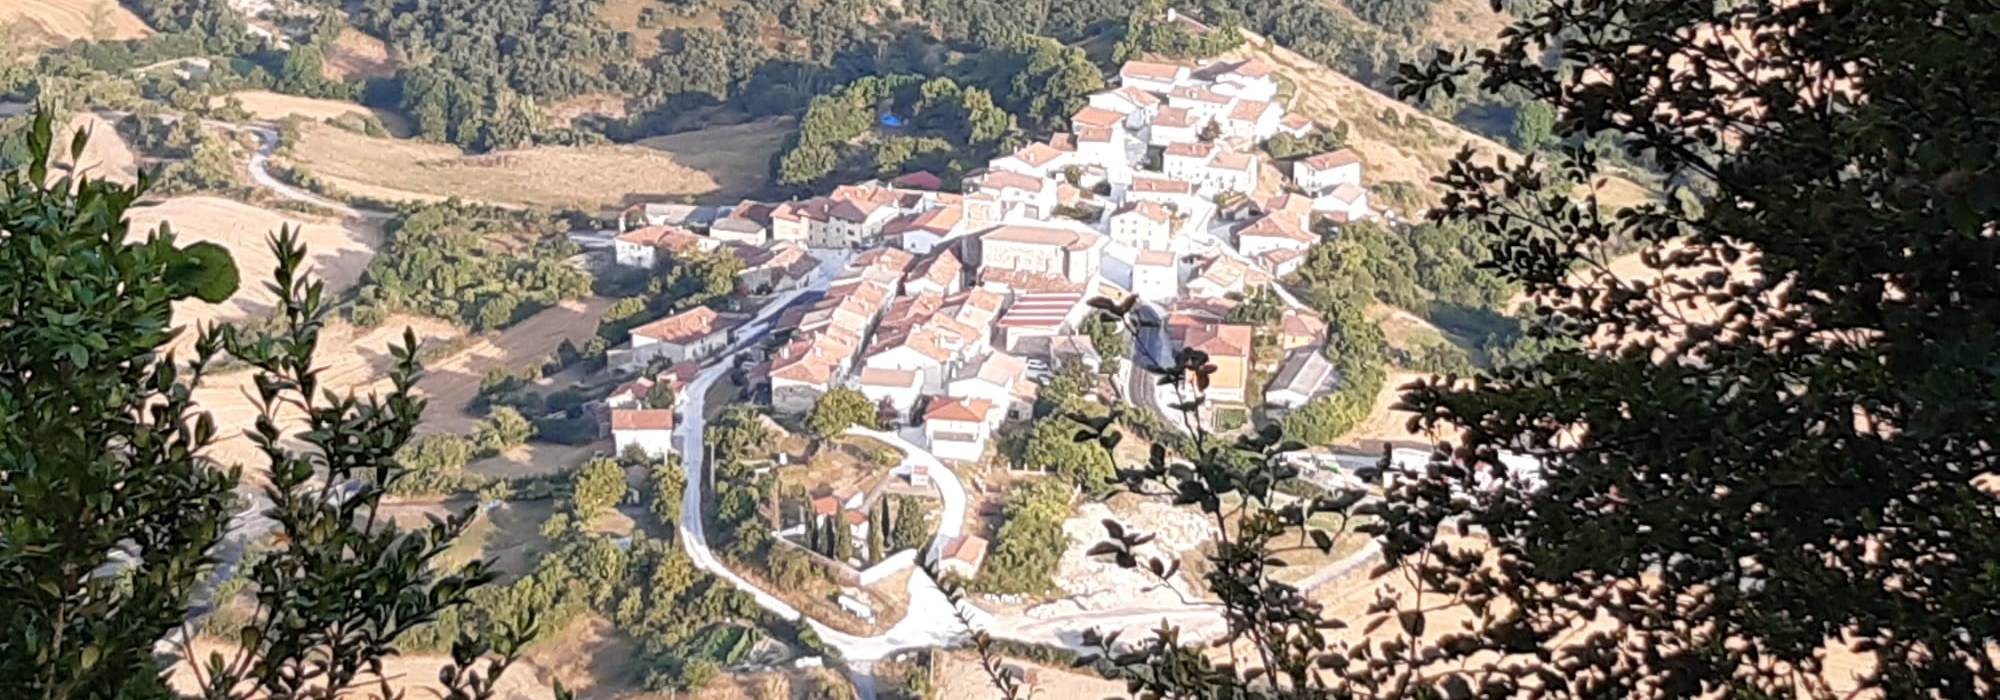 3. Ayuntamiento del Valle de Arana